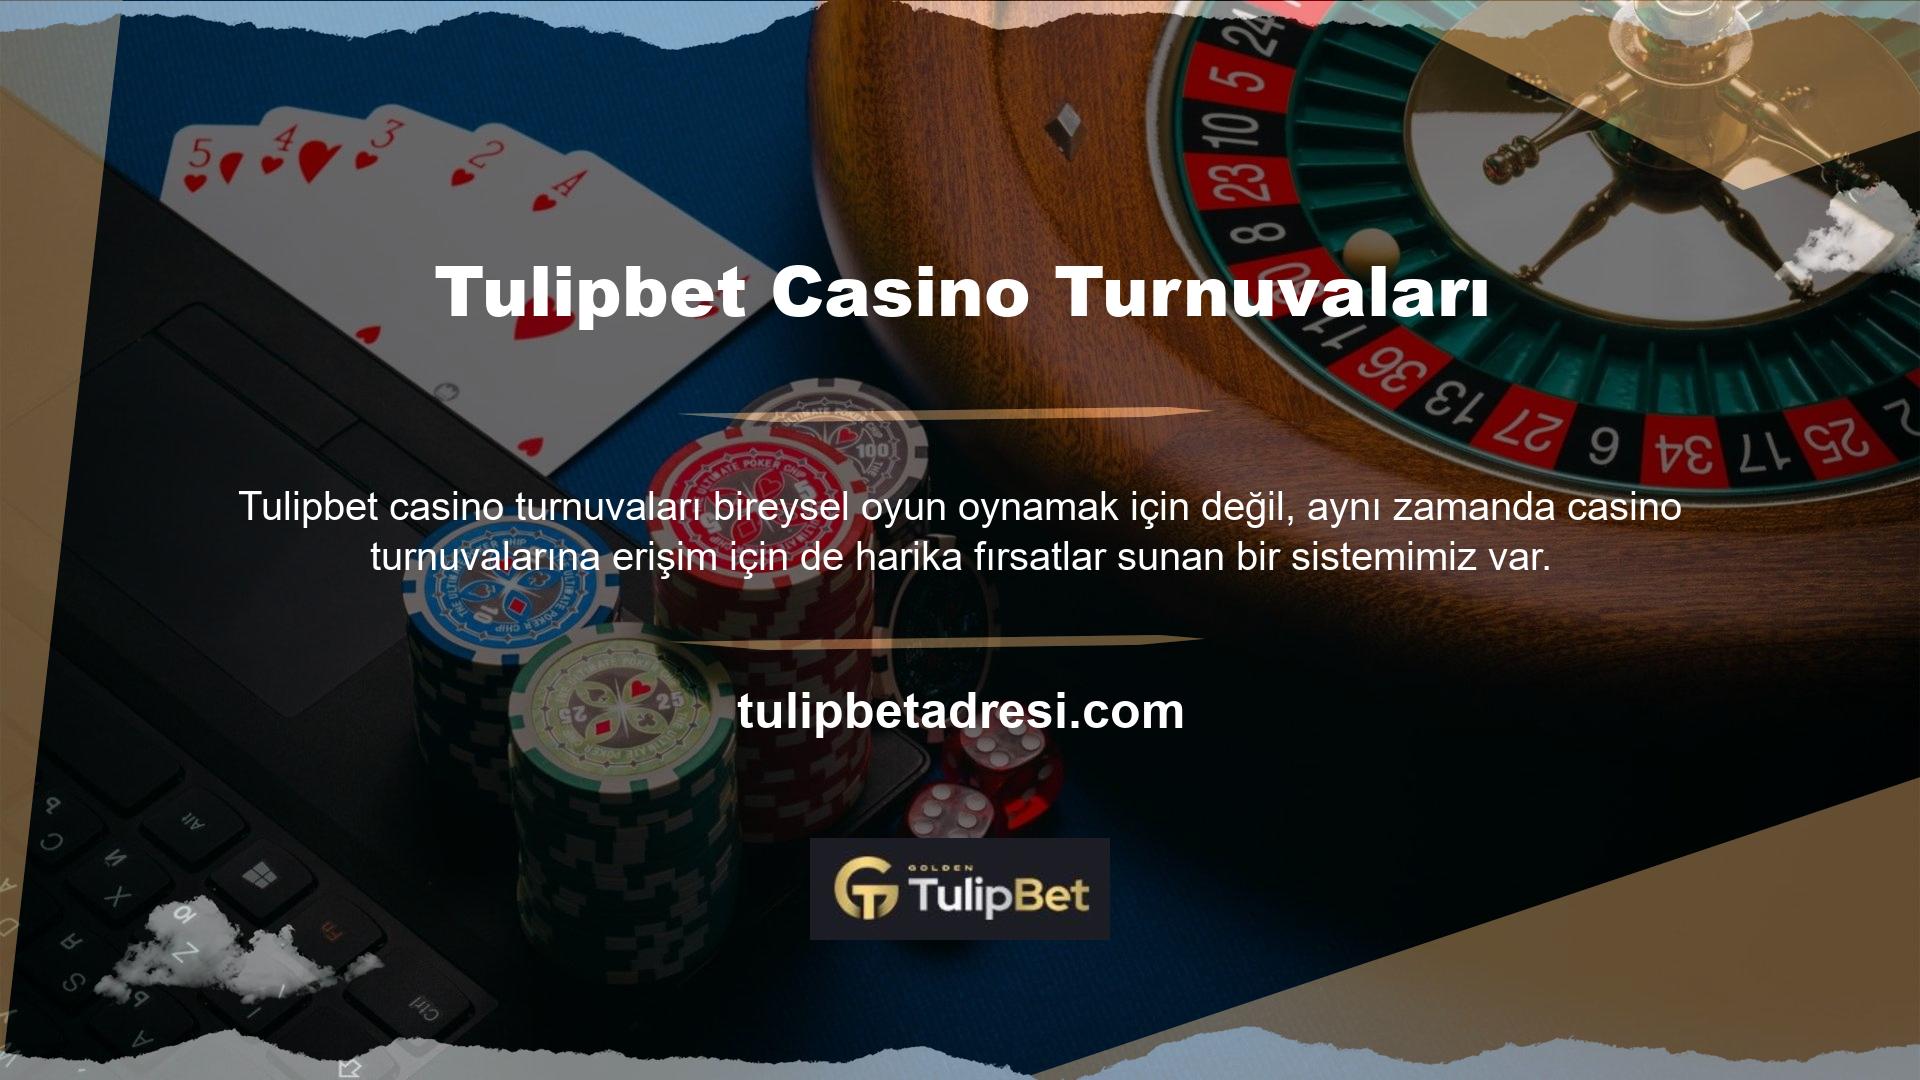 Kullanıcılar küçük bir seyahat ücreti ödeyerek casino turnuvalarına erişebilirler